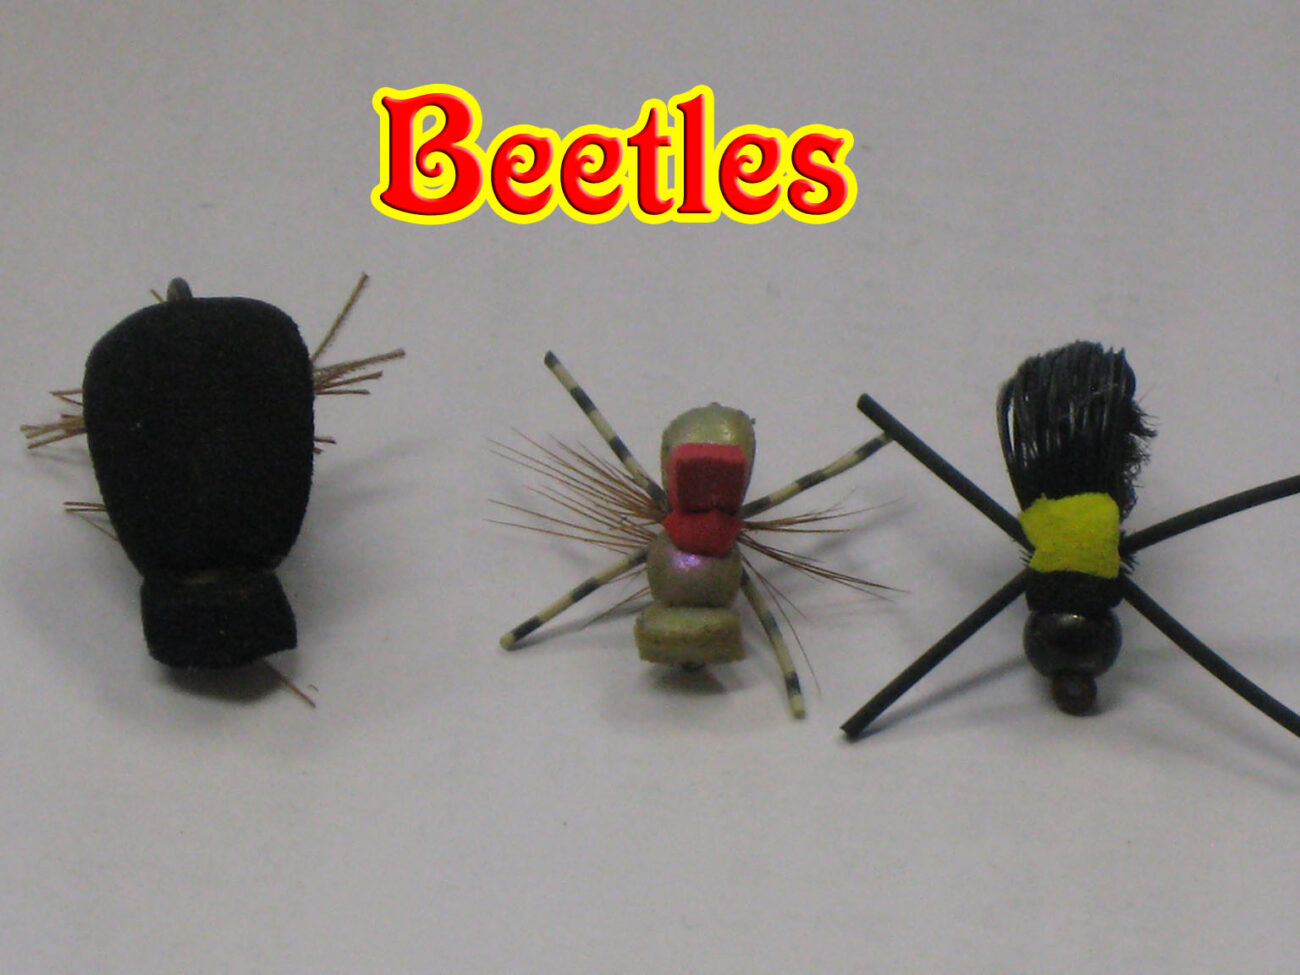 Beetle flies